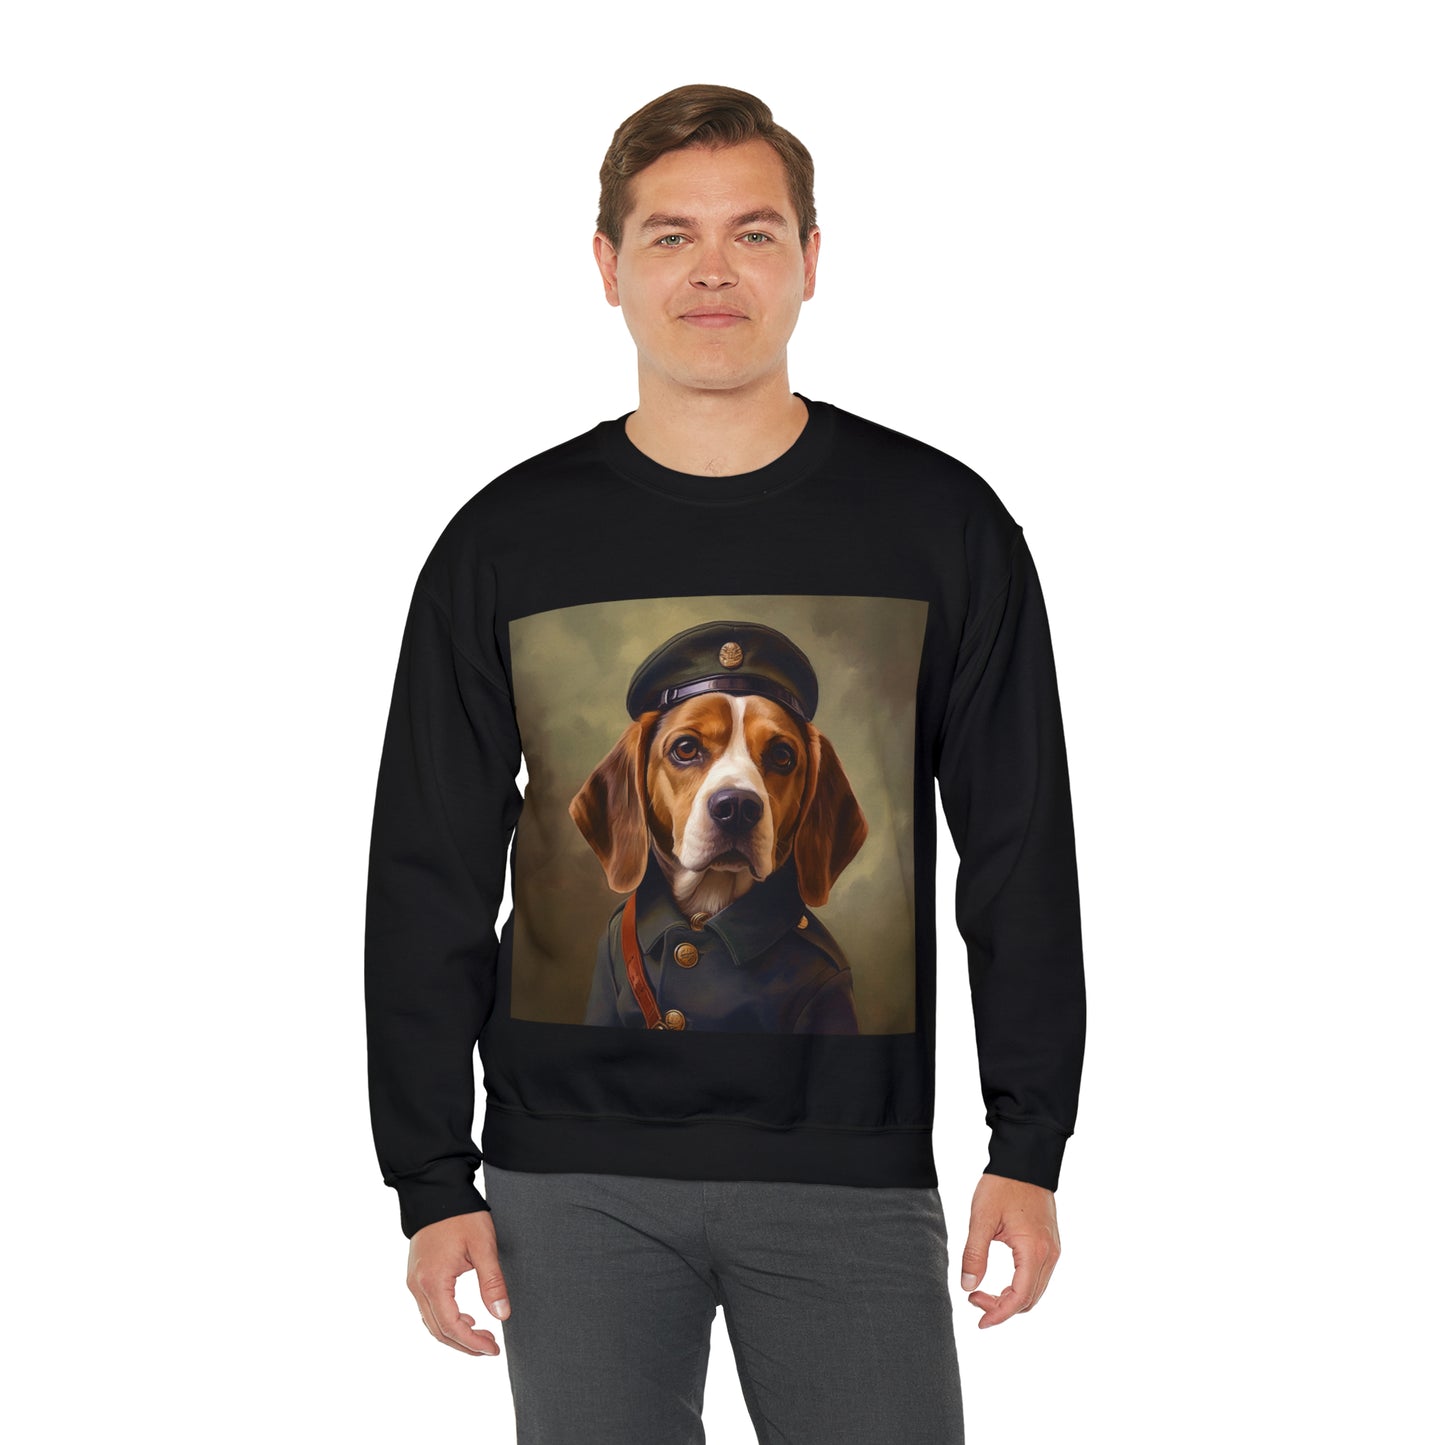 Beagle - WWI Soldier - Pet Portrait Unisex Crewneck Sweatshirt